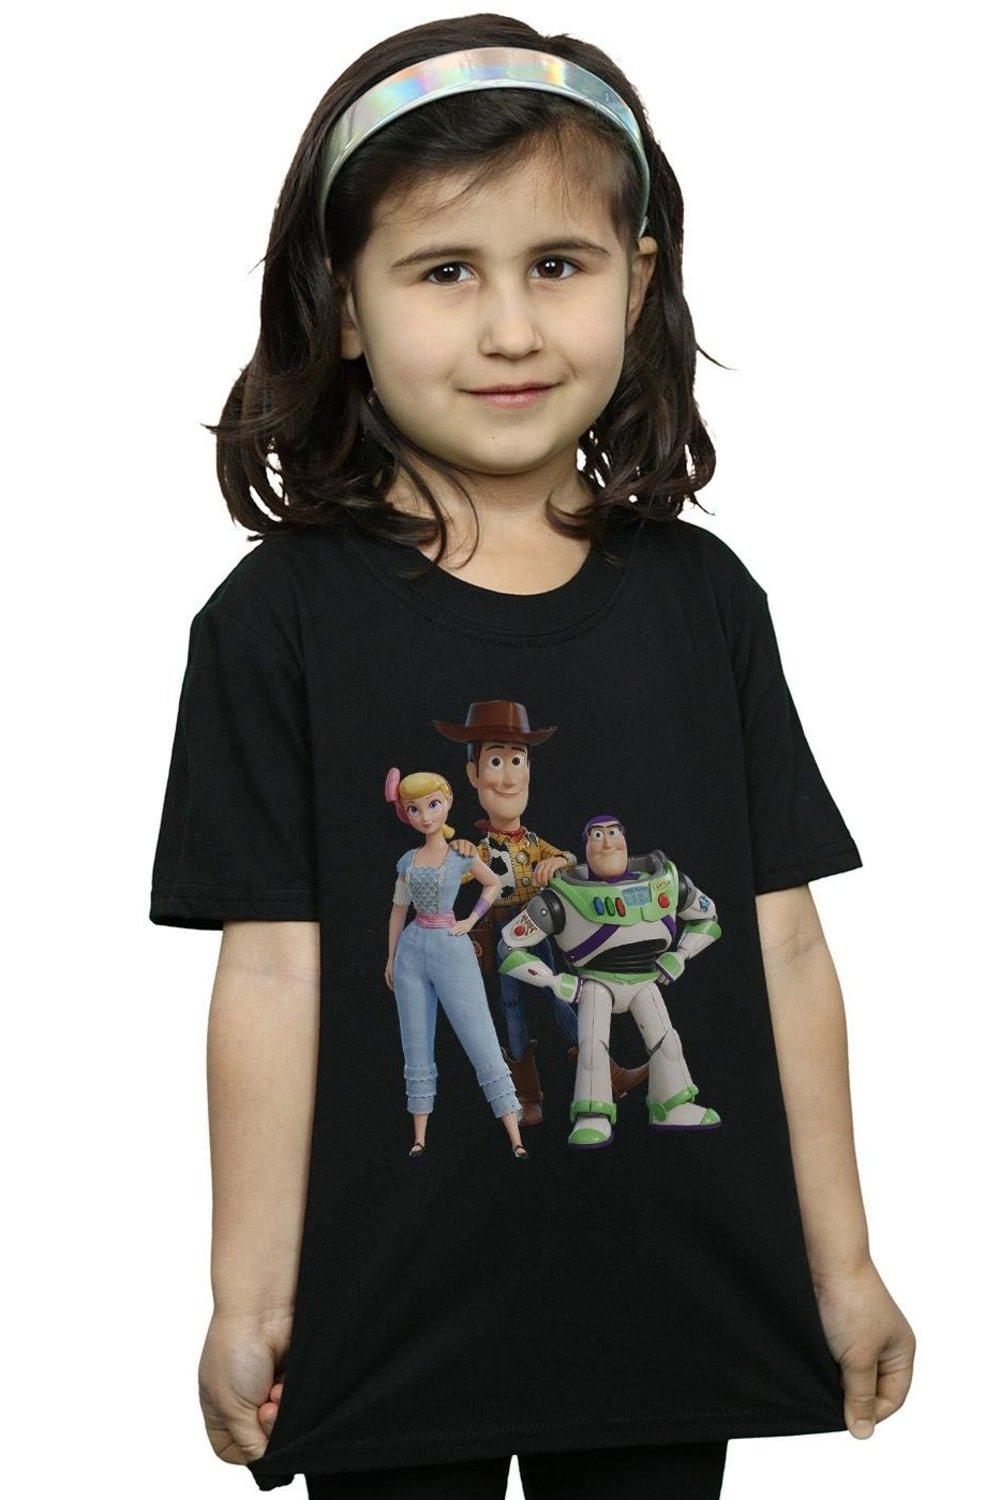 Хлопковая футболка «История игрушек 4: Вуди Базз и Бо Пип» Disney, черный пазлы история игрушек шериф бо пип и рекс детская логика